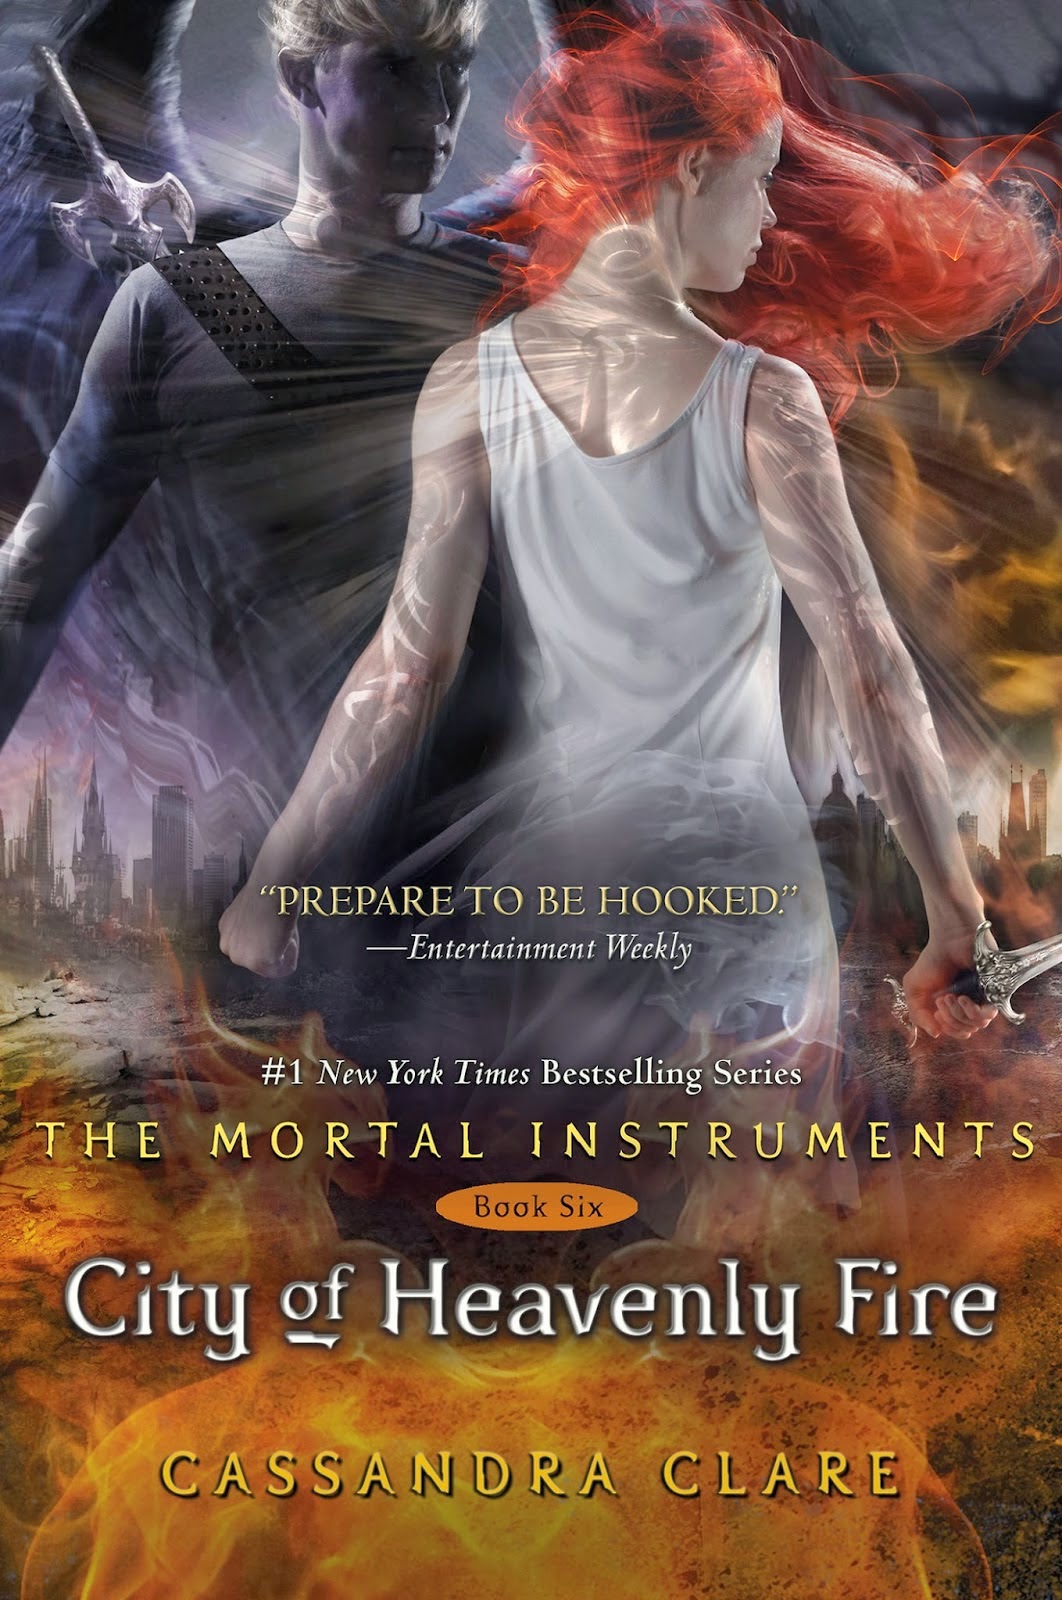 The Mortal Instruments - Cassandra Clare Nuevo+extracto+de+Ciudad+de+fuego+celestial+(Cazadores+de+sombras+6)+-+Cassandra+Clare